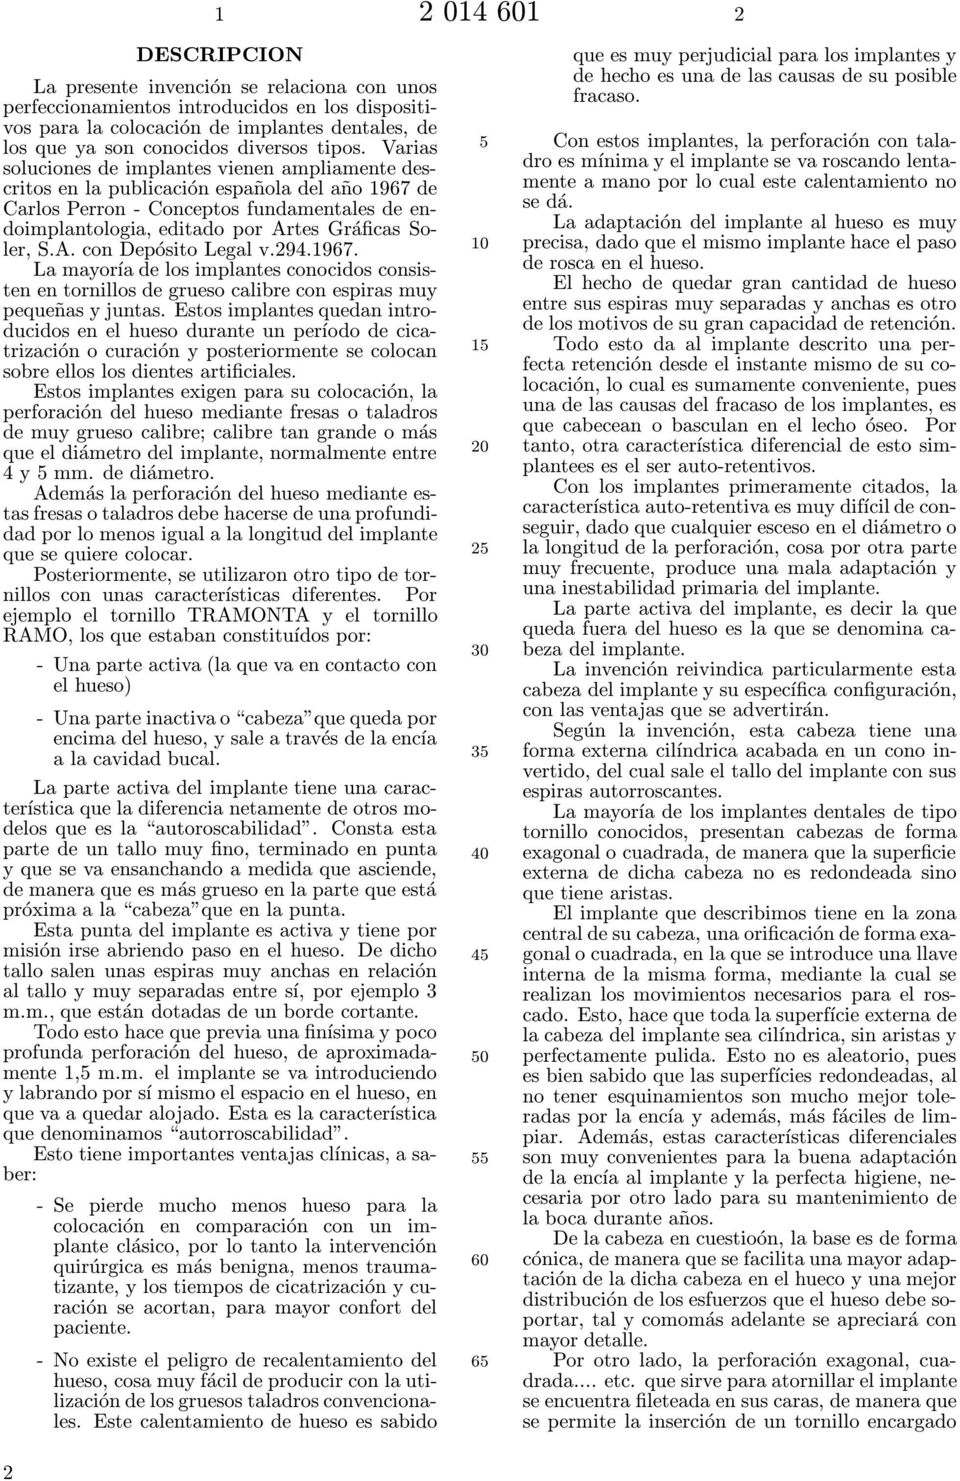 Varias soluciones de implantes vienen ampliamente descritos en la publicación española del año 1967 de Carlos Perron - Conceptos fundamentales de endoimplantologia, editado por Artes Gráficas Soler,